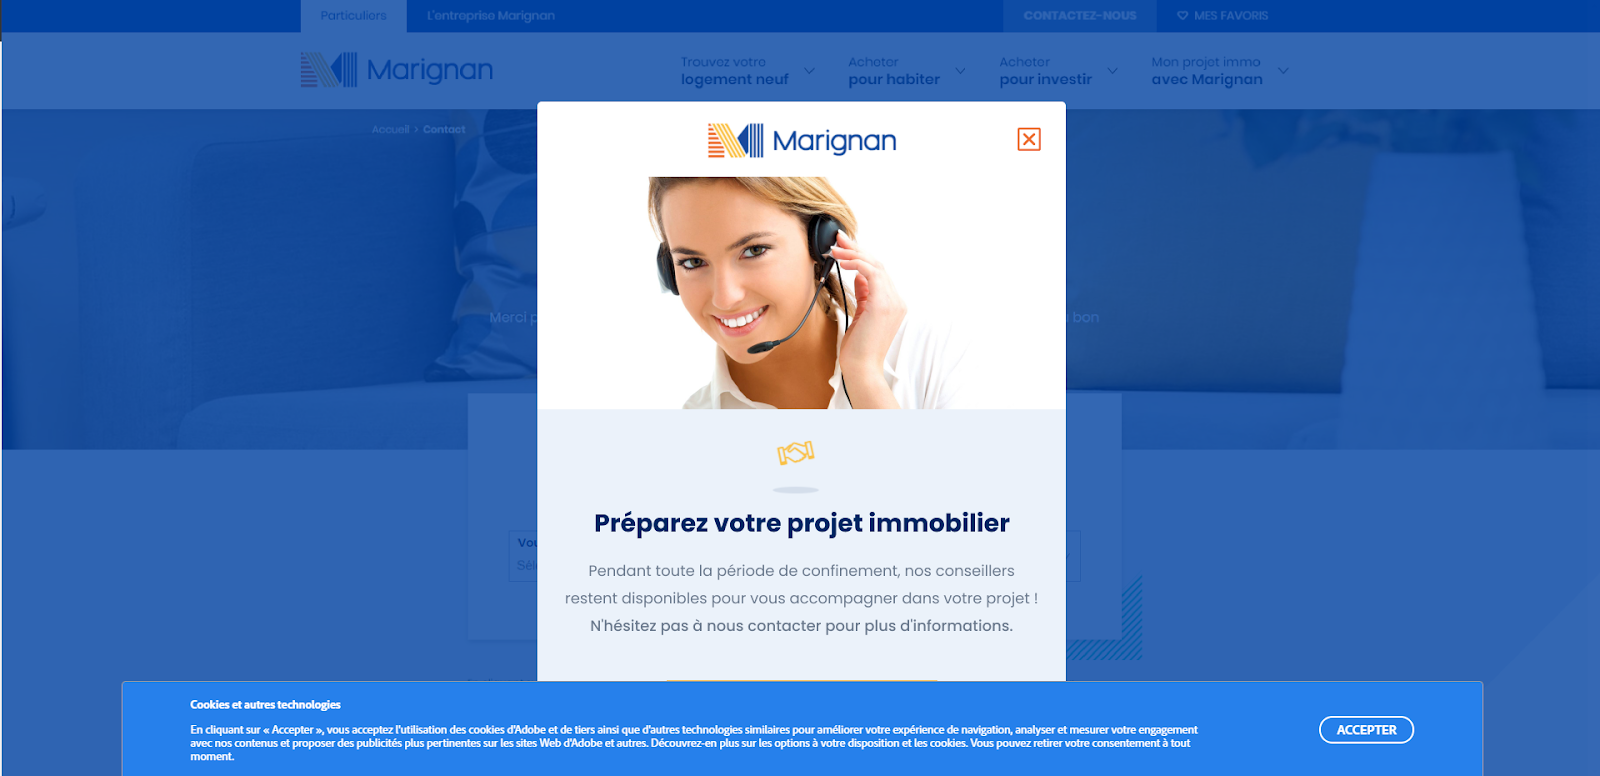 Bandeau sur le site de Marignan invitant à préparer son projet immo